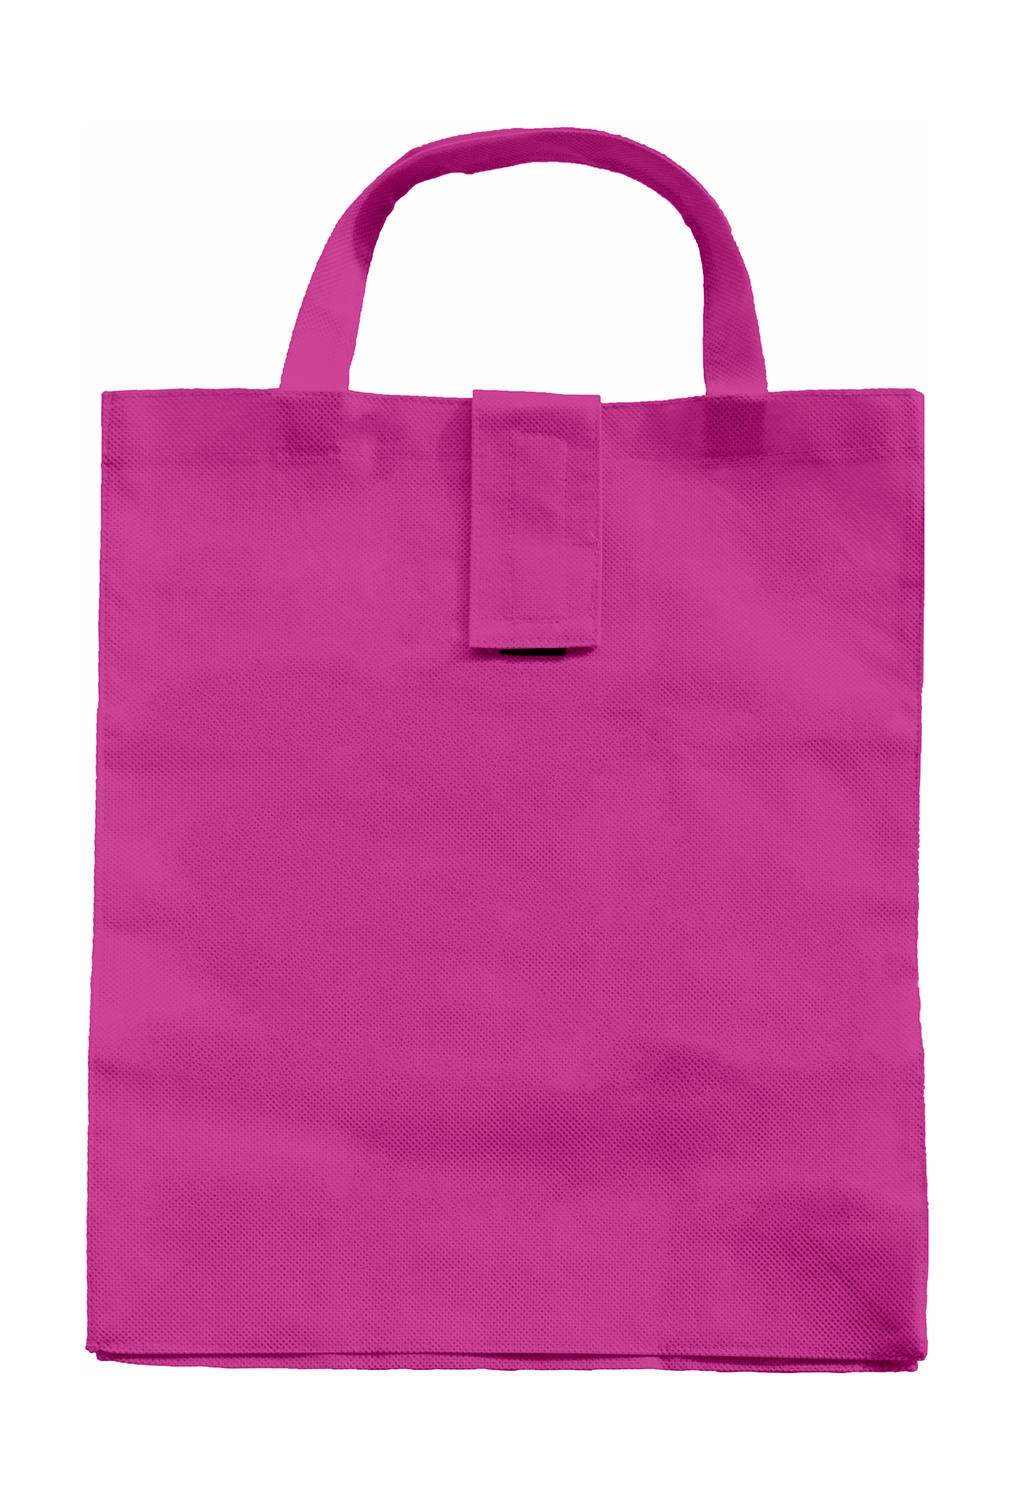 Folding Shopper SH zum Besticken und Bedrucken in der Farbe Pink mit Ihren Logo, Schriftzug oder Motiv.